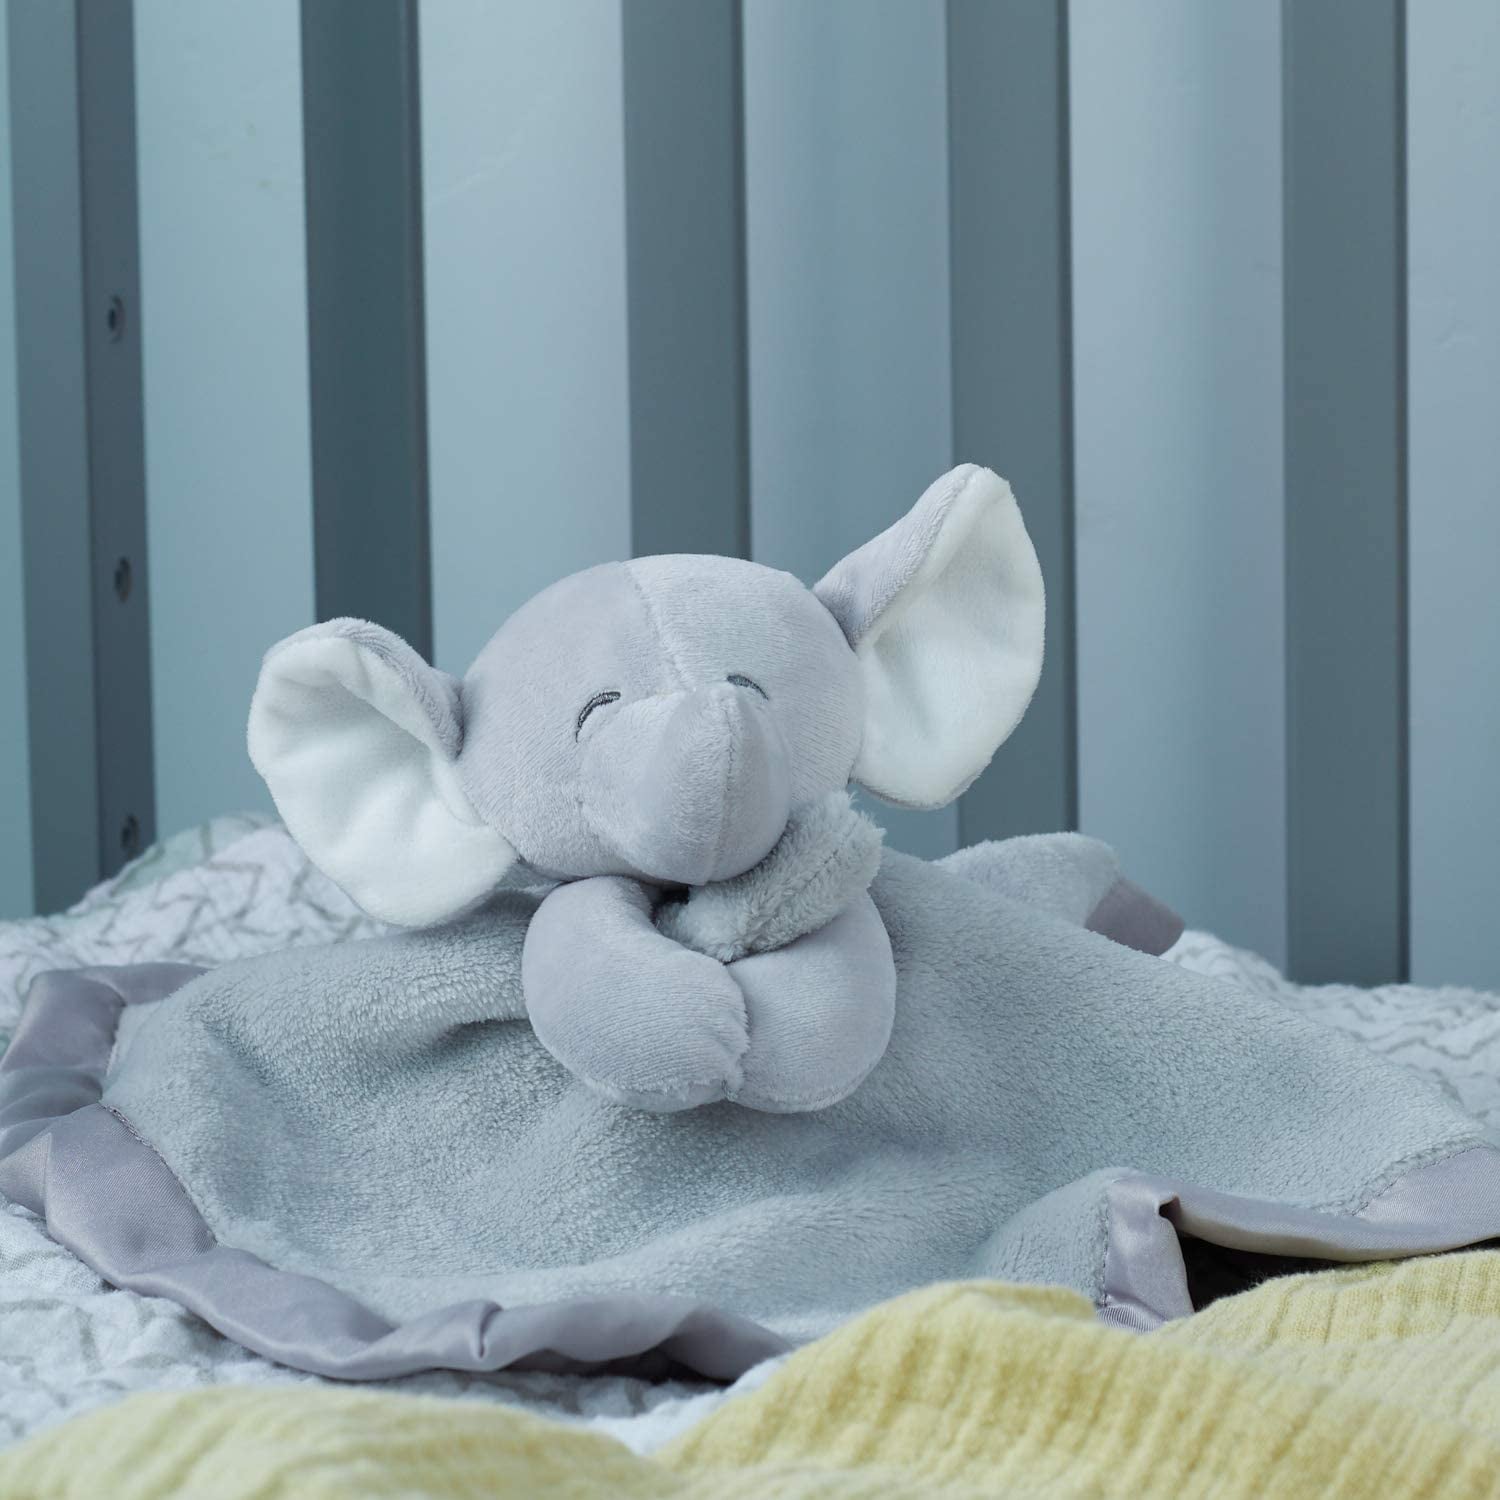 NWT Carters Turquoise Aqua Blue White Elephant Security Blanket Plush Baby Toy 